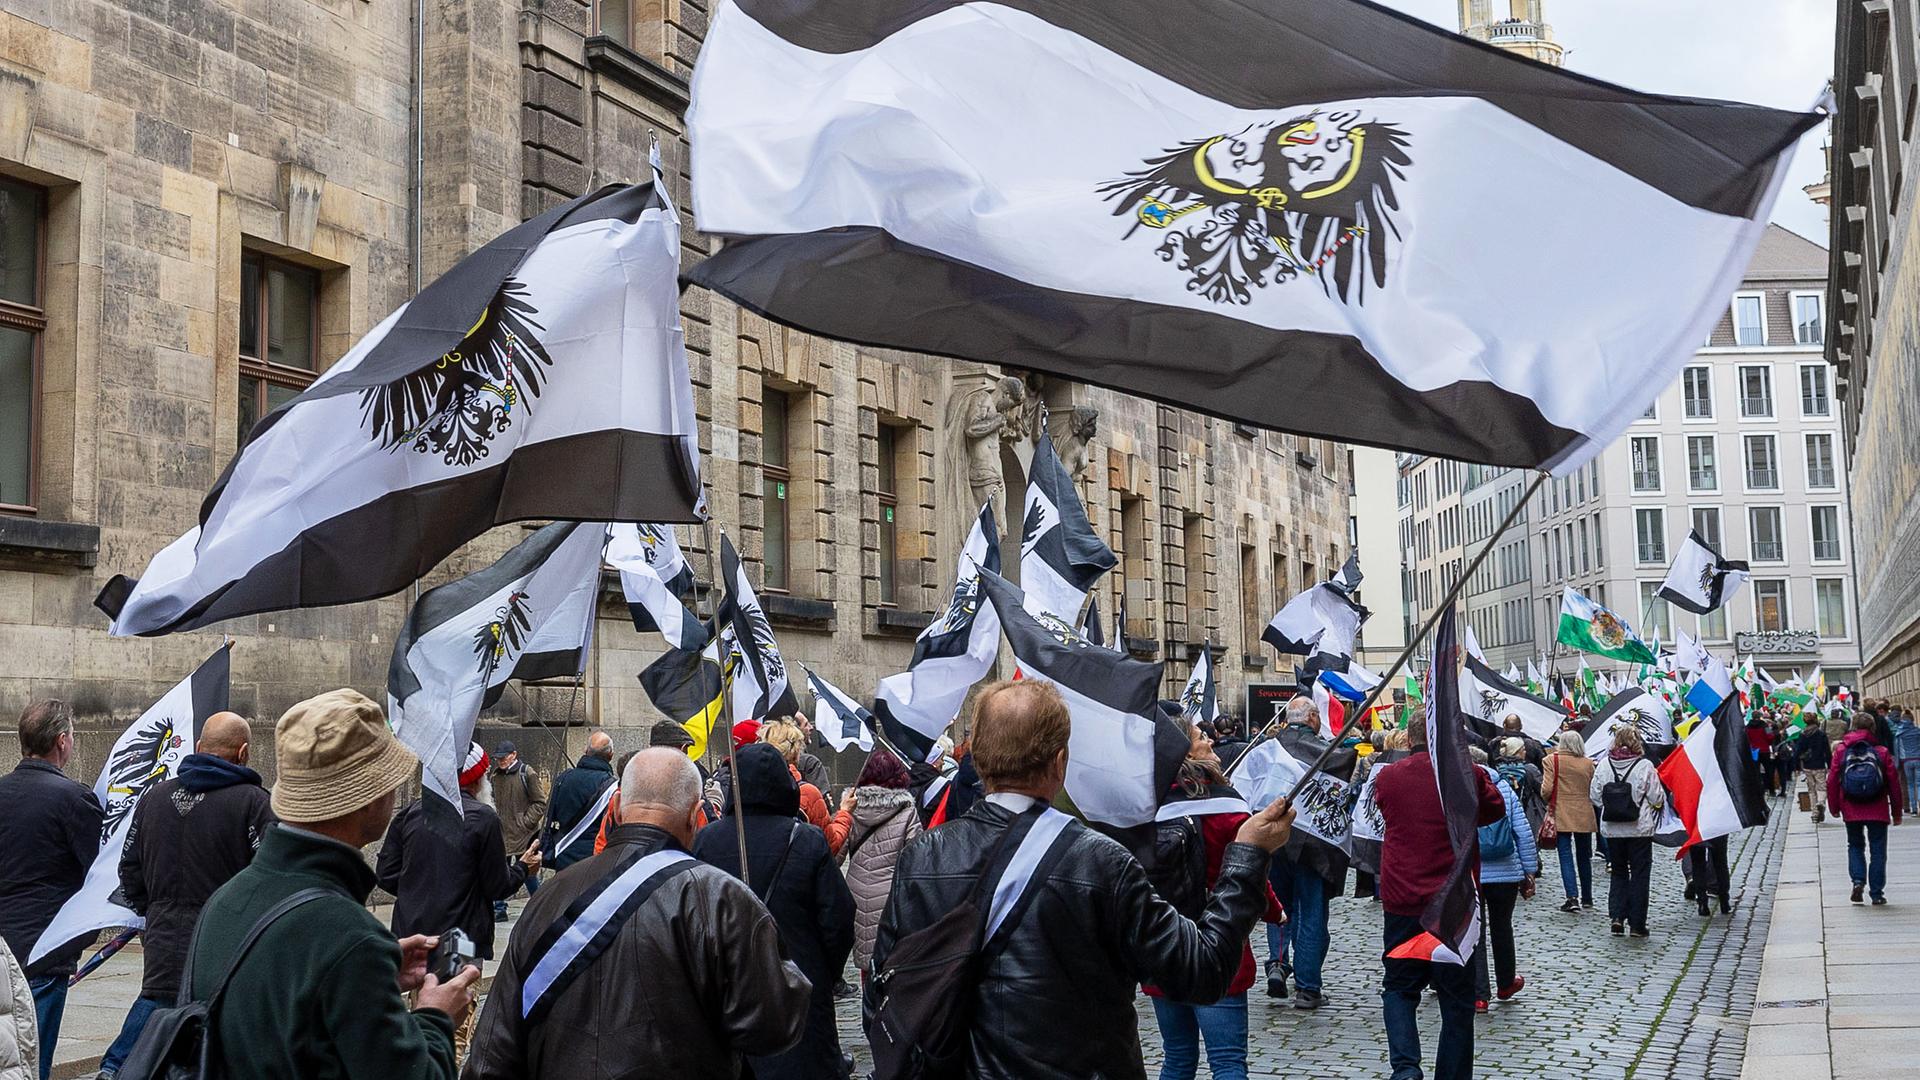 Mehrere hundert Teilnehmer einer Demonstration ziehen mit Flaggen vom Königreich Preußen durch die Innenstadt von Dresden.